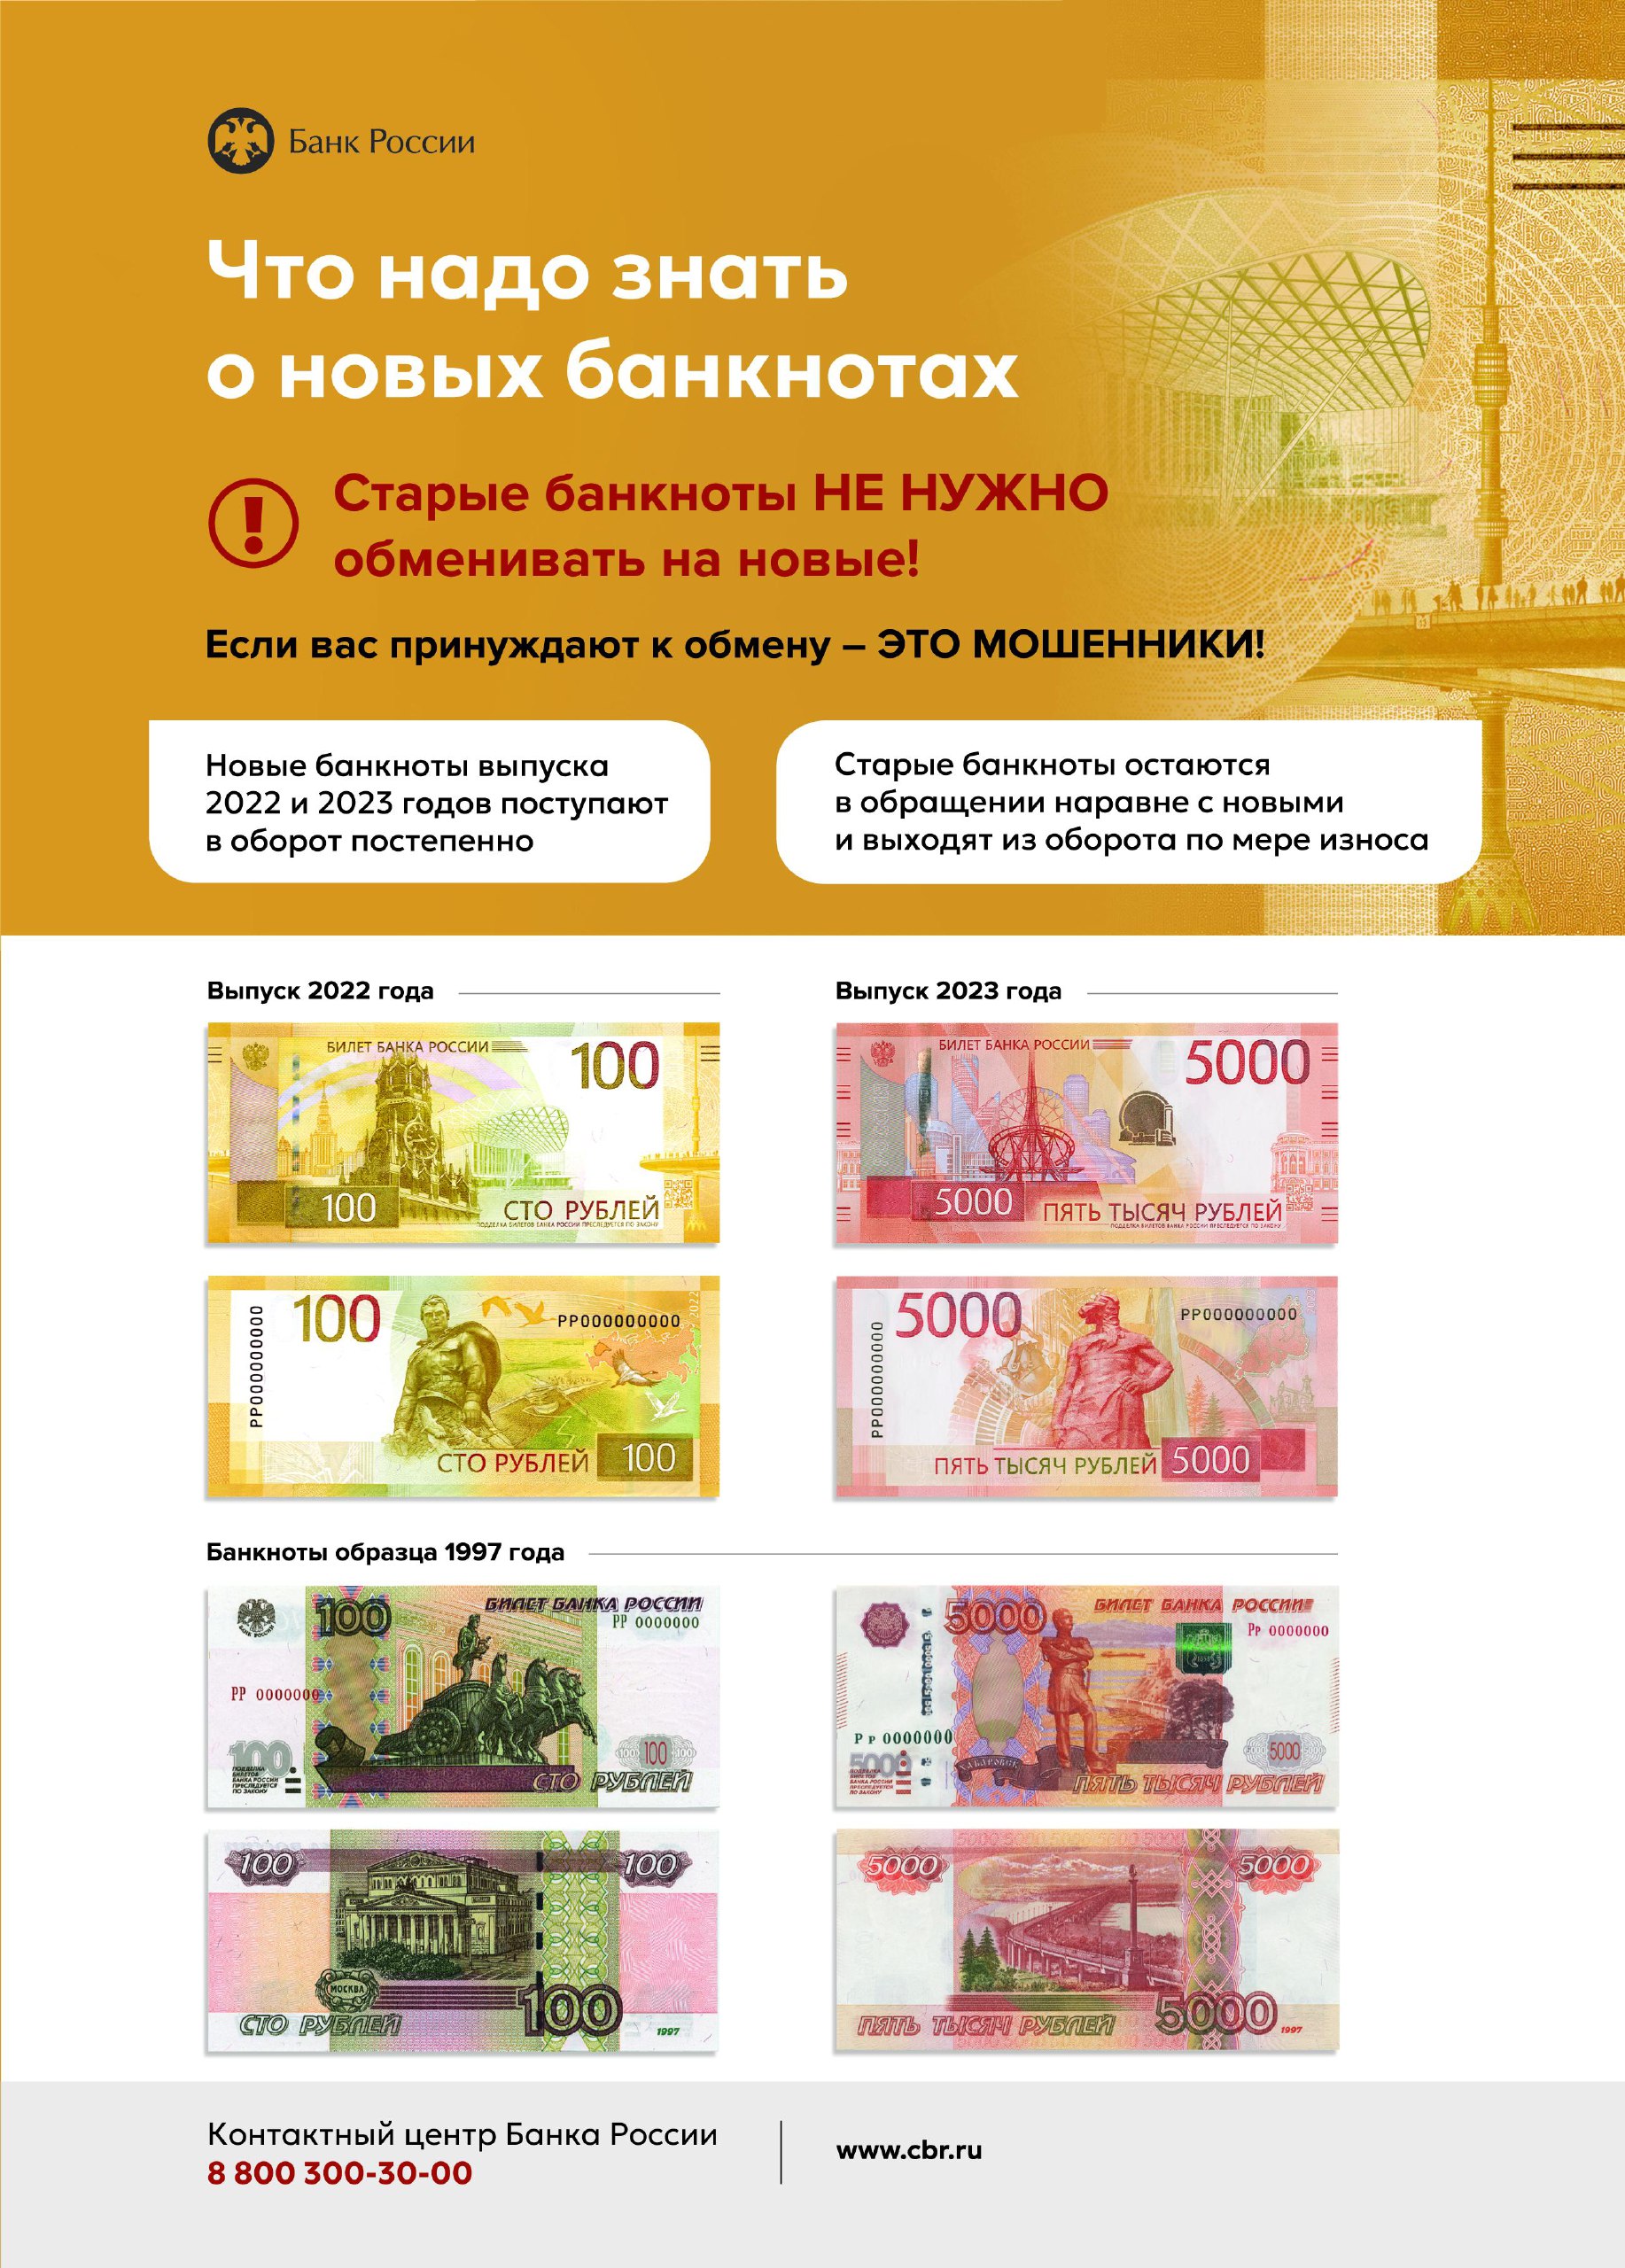 Банк России для повышения защищенности банкнот от подделки проводит модернизацию банкнот.